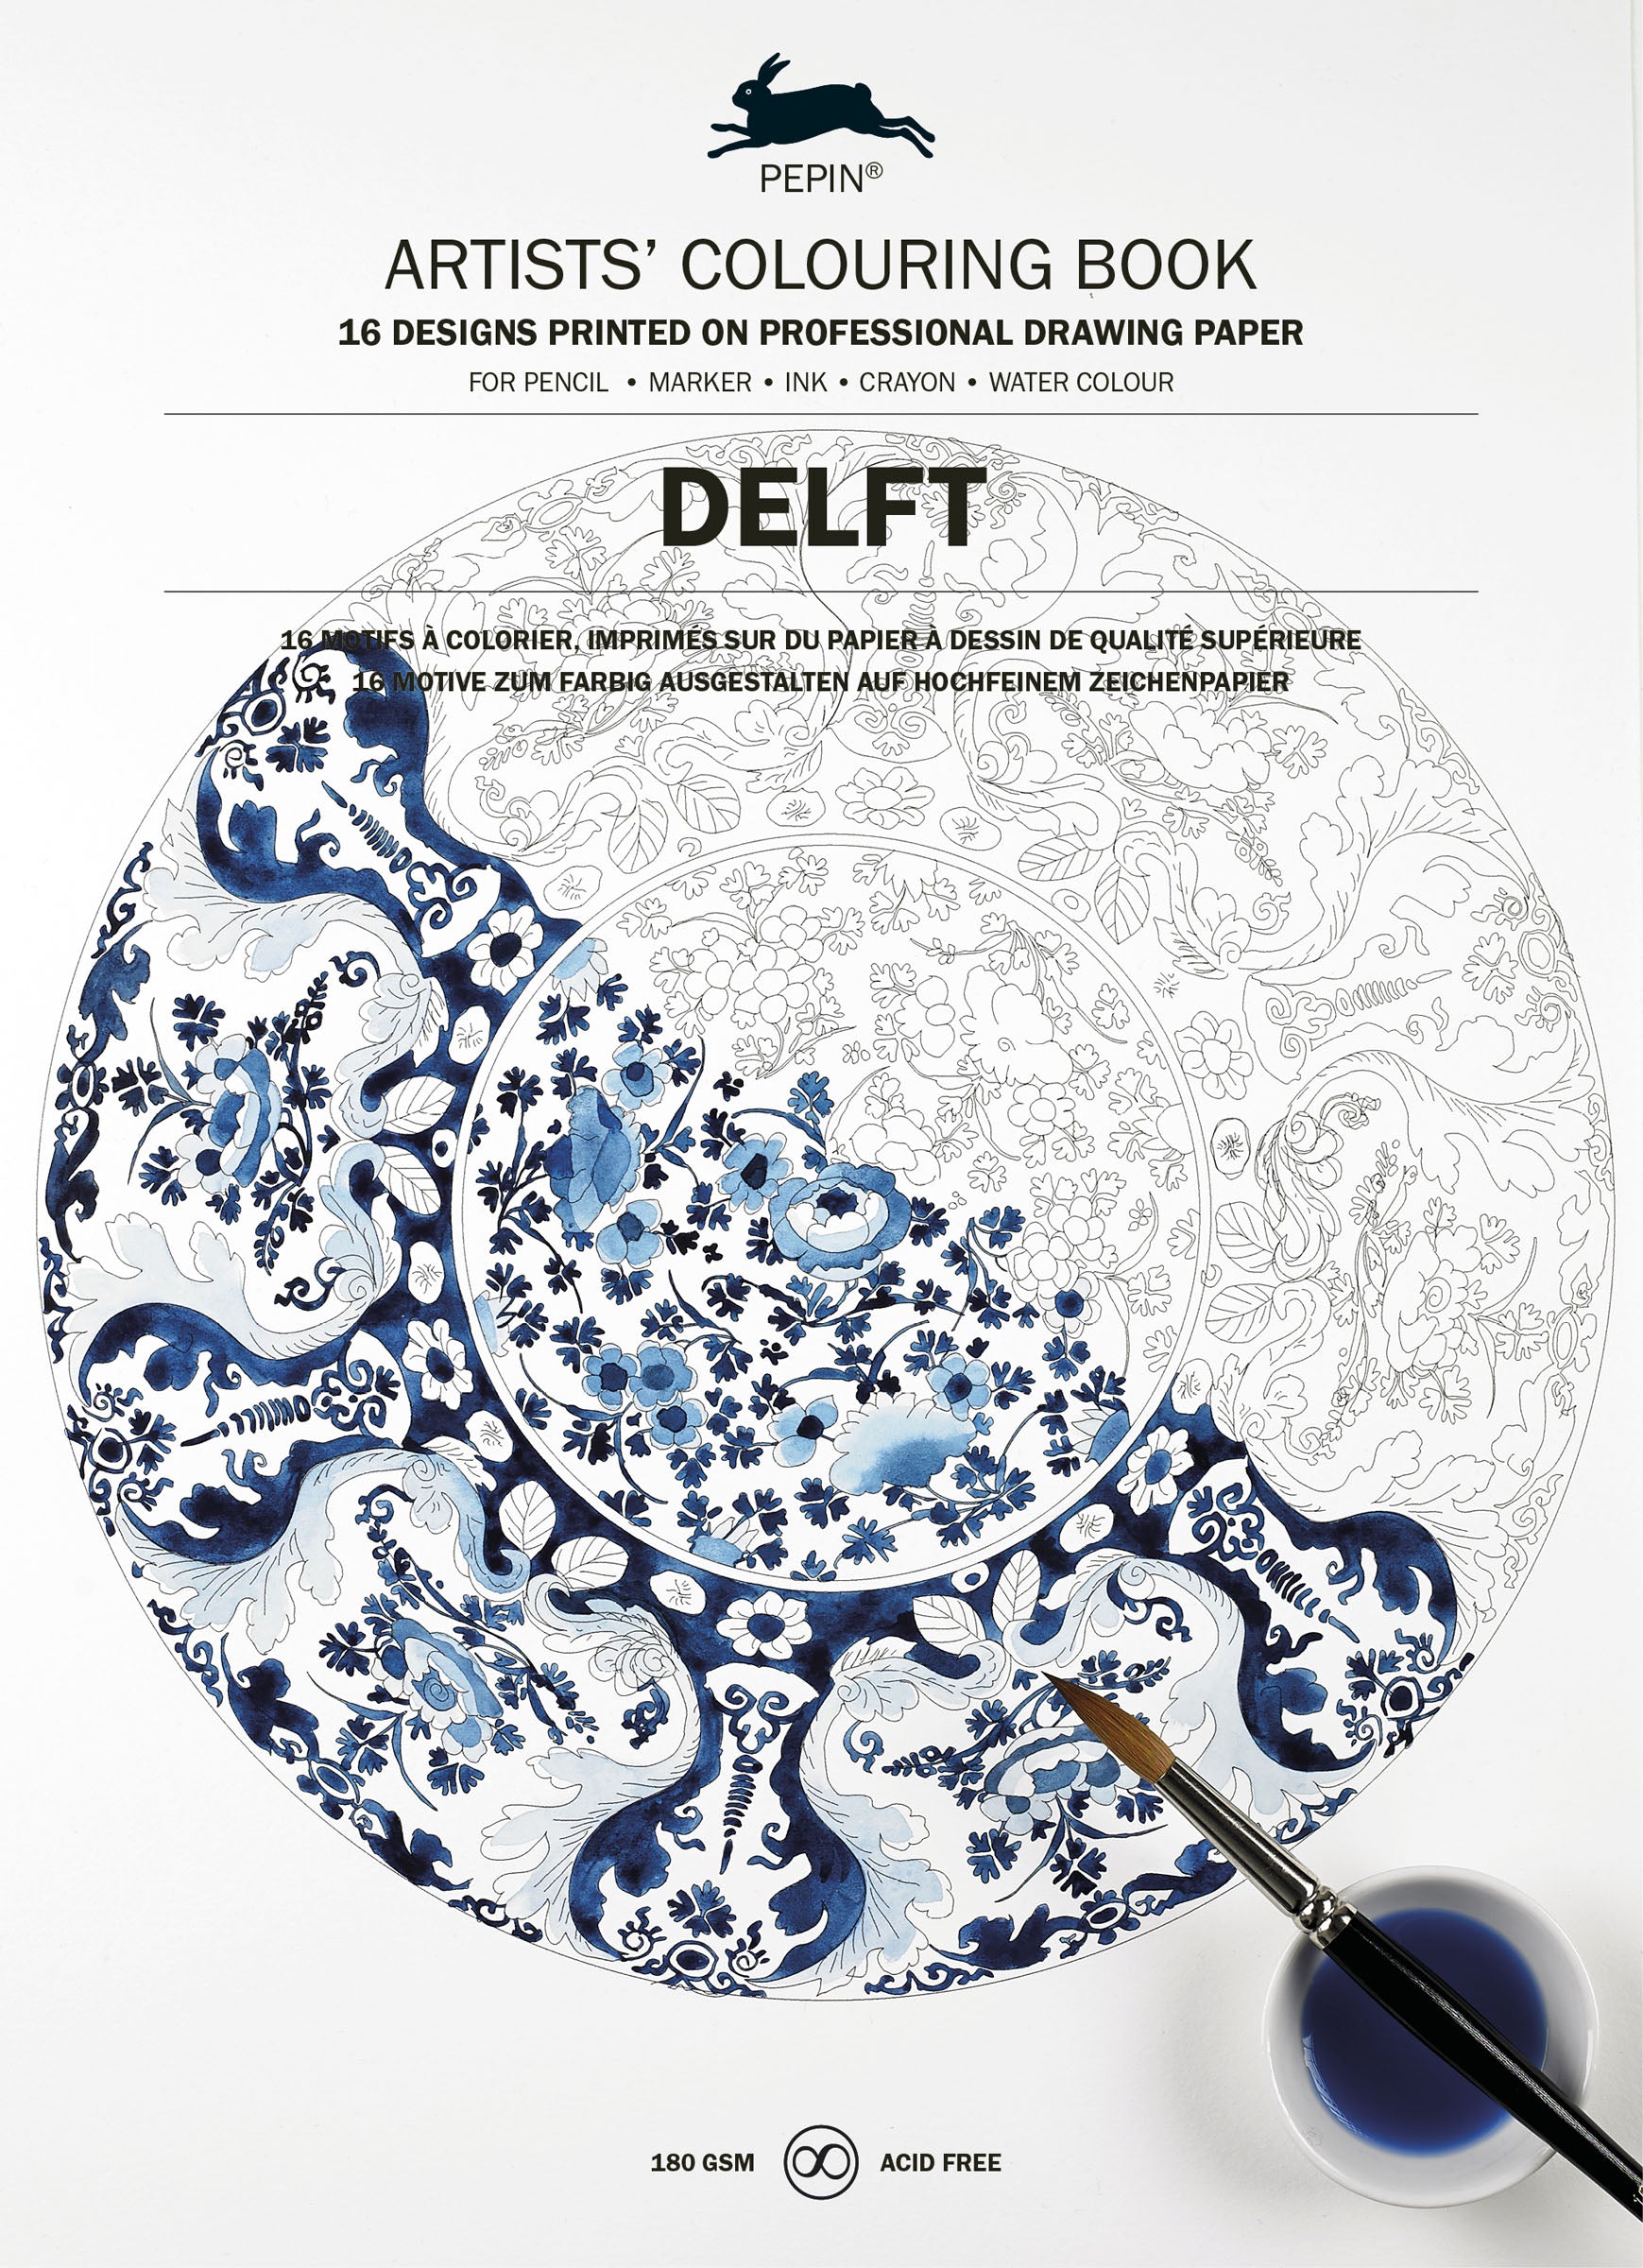 Artists' Coloring Book - Delft